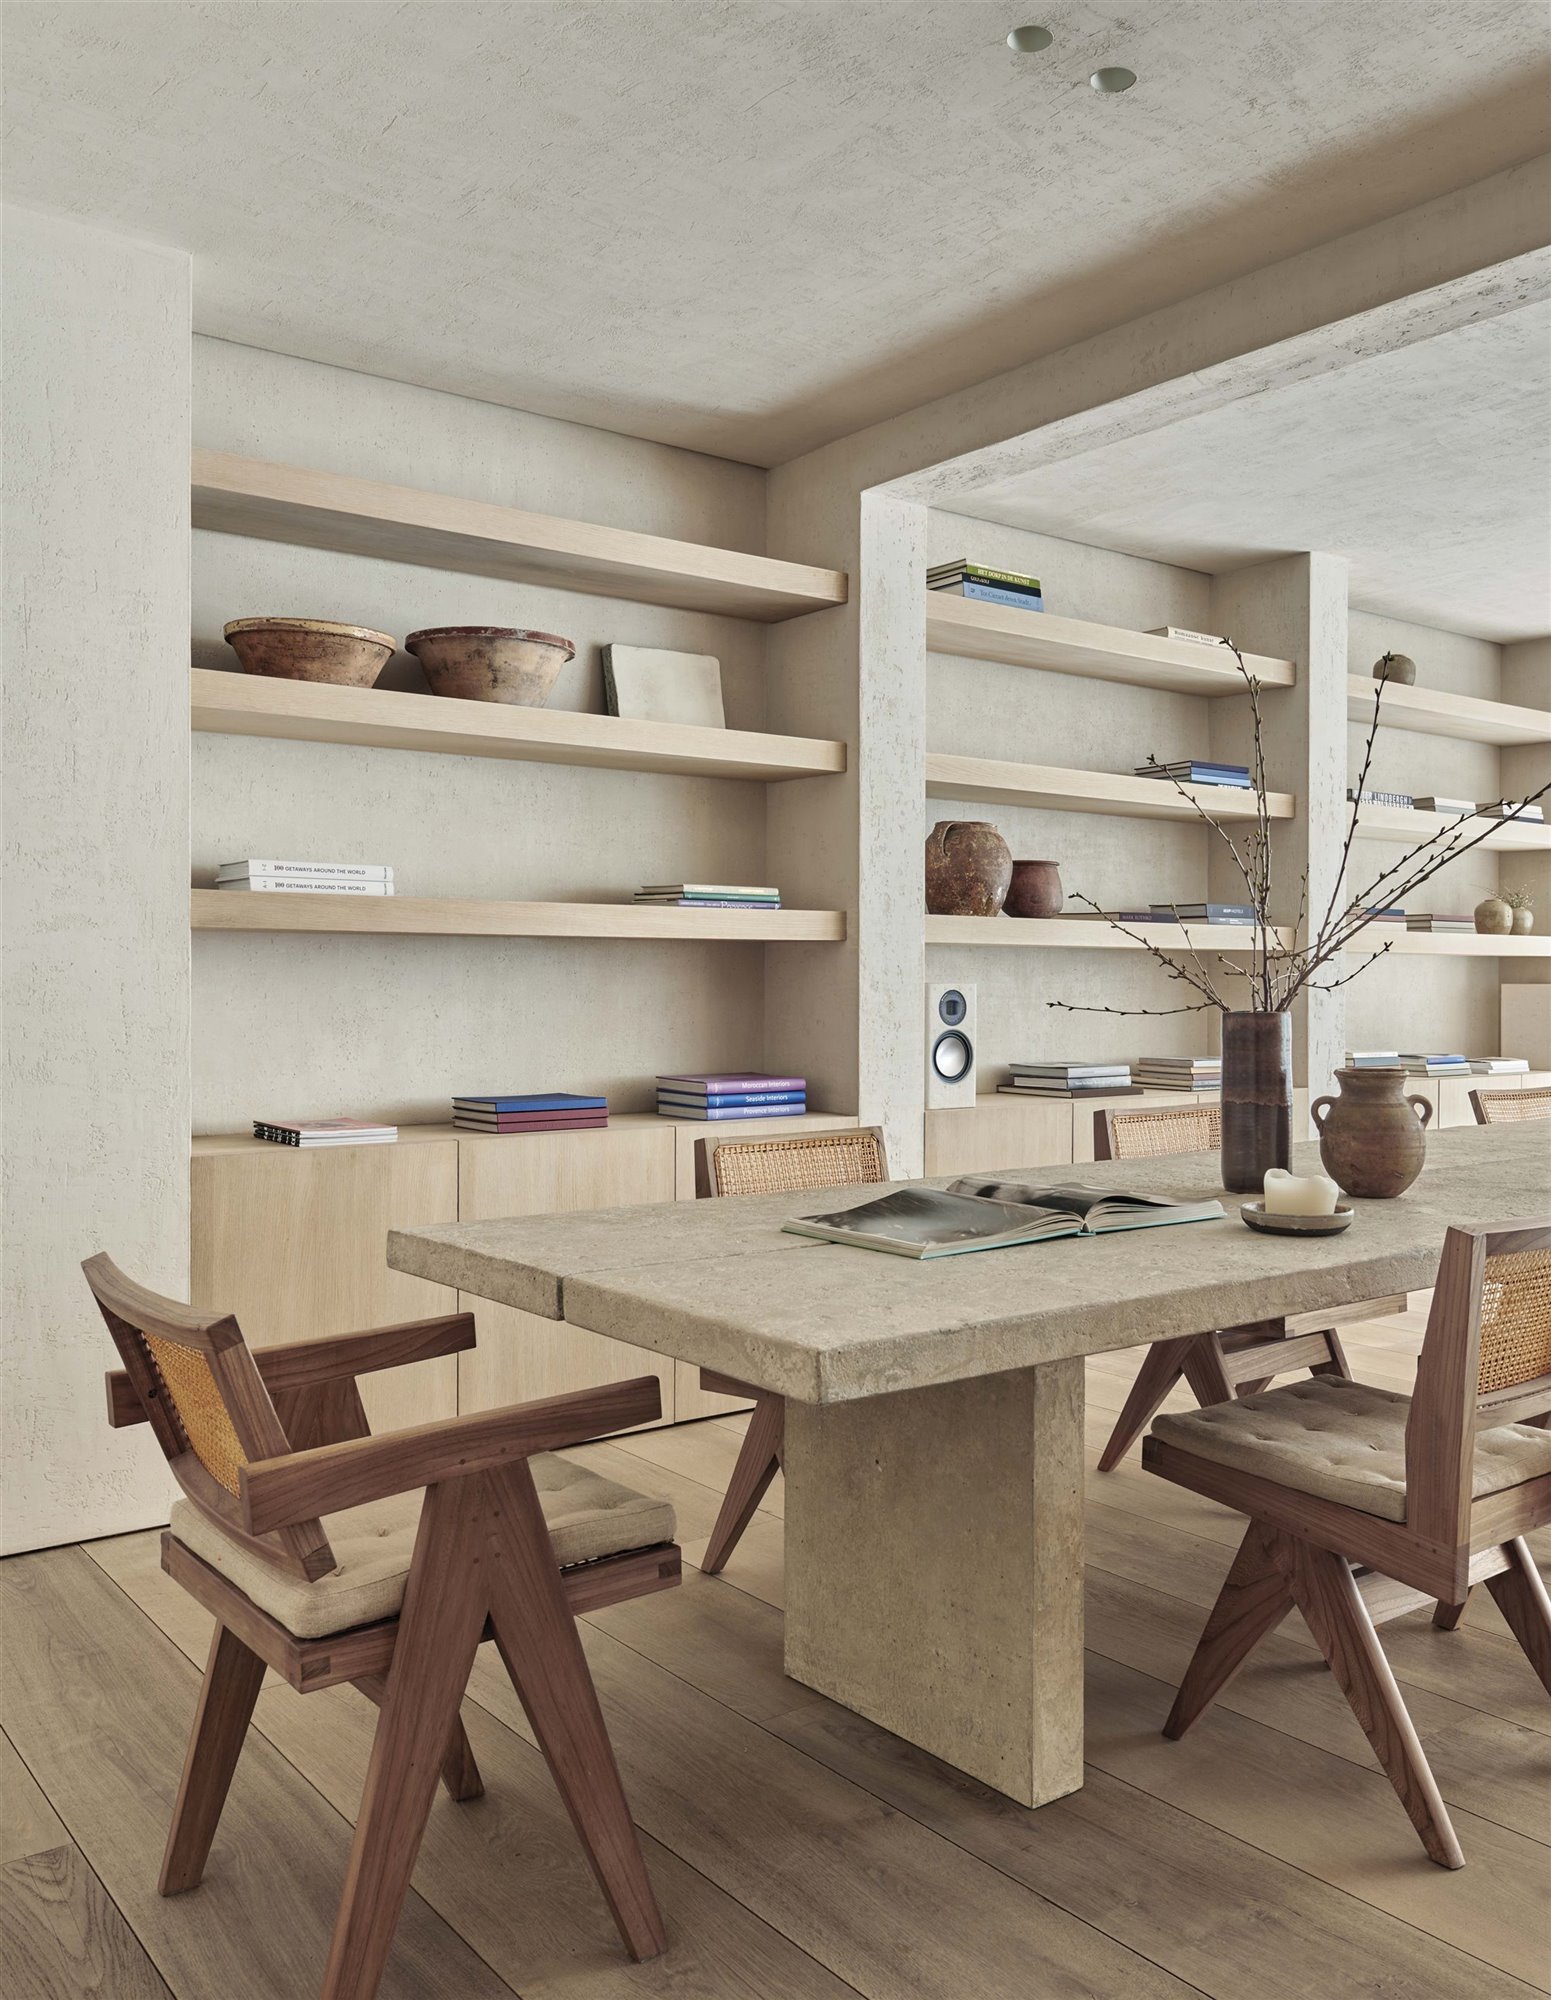 Mesa comedor de cemento con silla de madera y mimbre, jarrón y estantería minimalista estilo japonés.